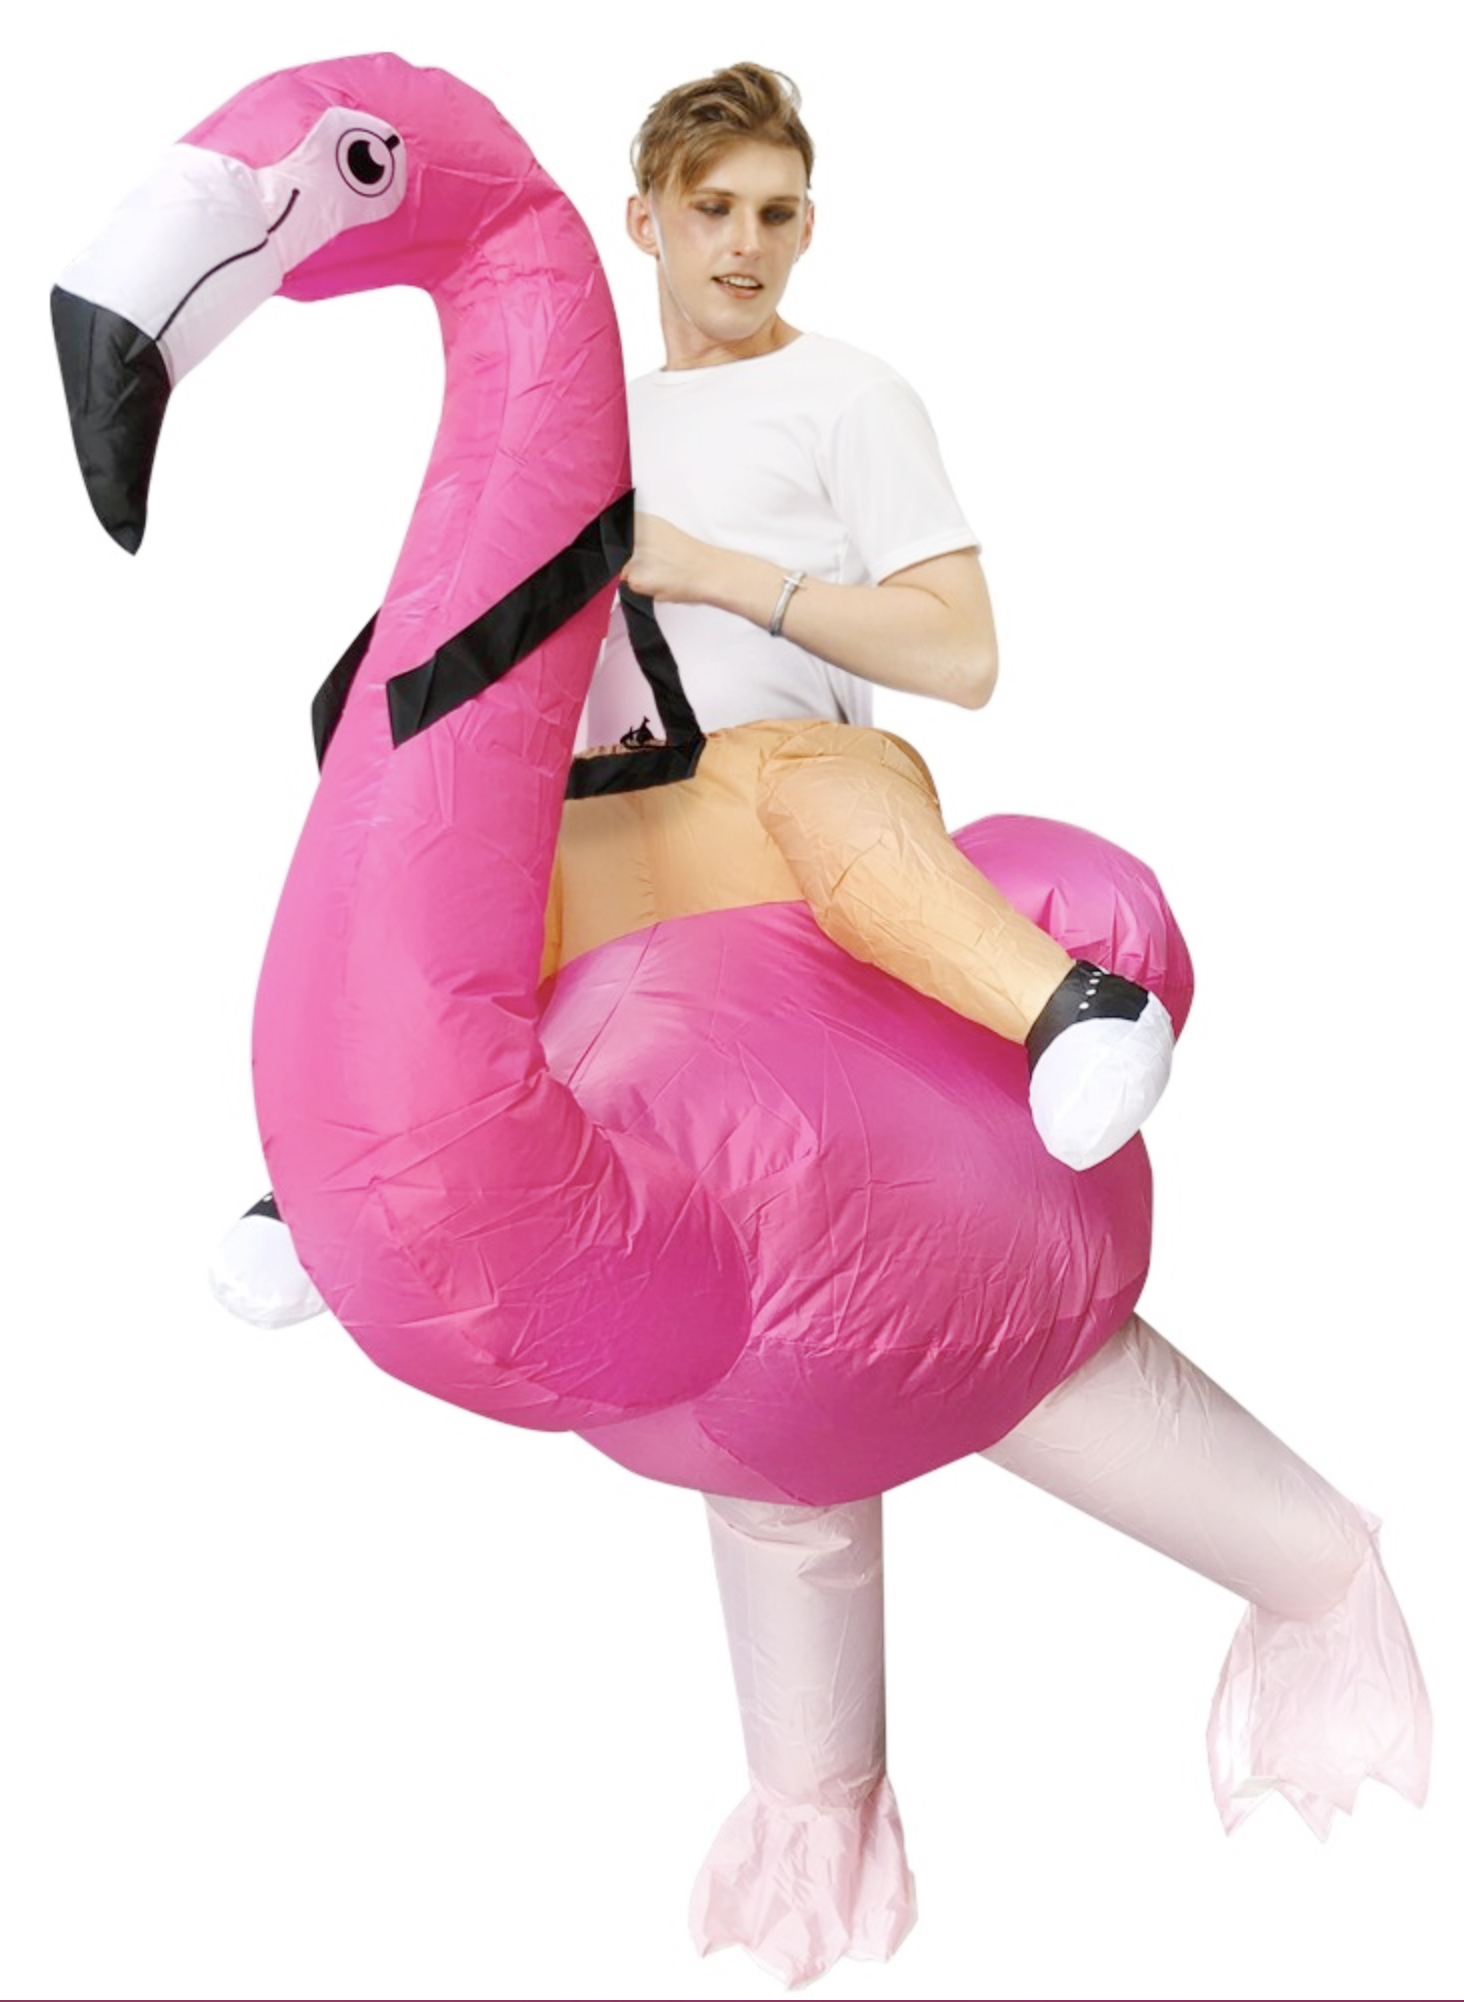 Kan niet stil Detecteren Opblaasbaar rijdend op flamingo kostuum roze safari kopen? FeestinjeBeest.nl